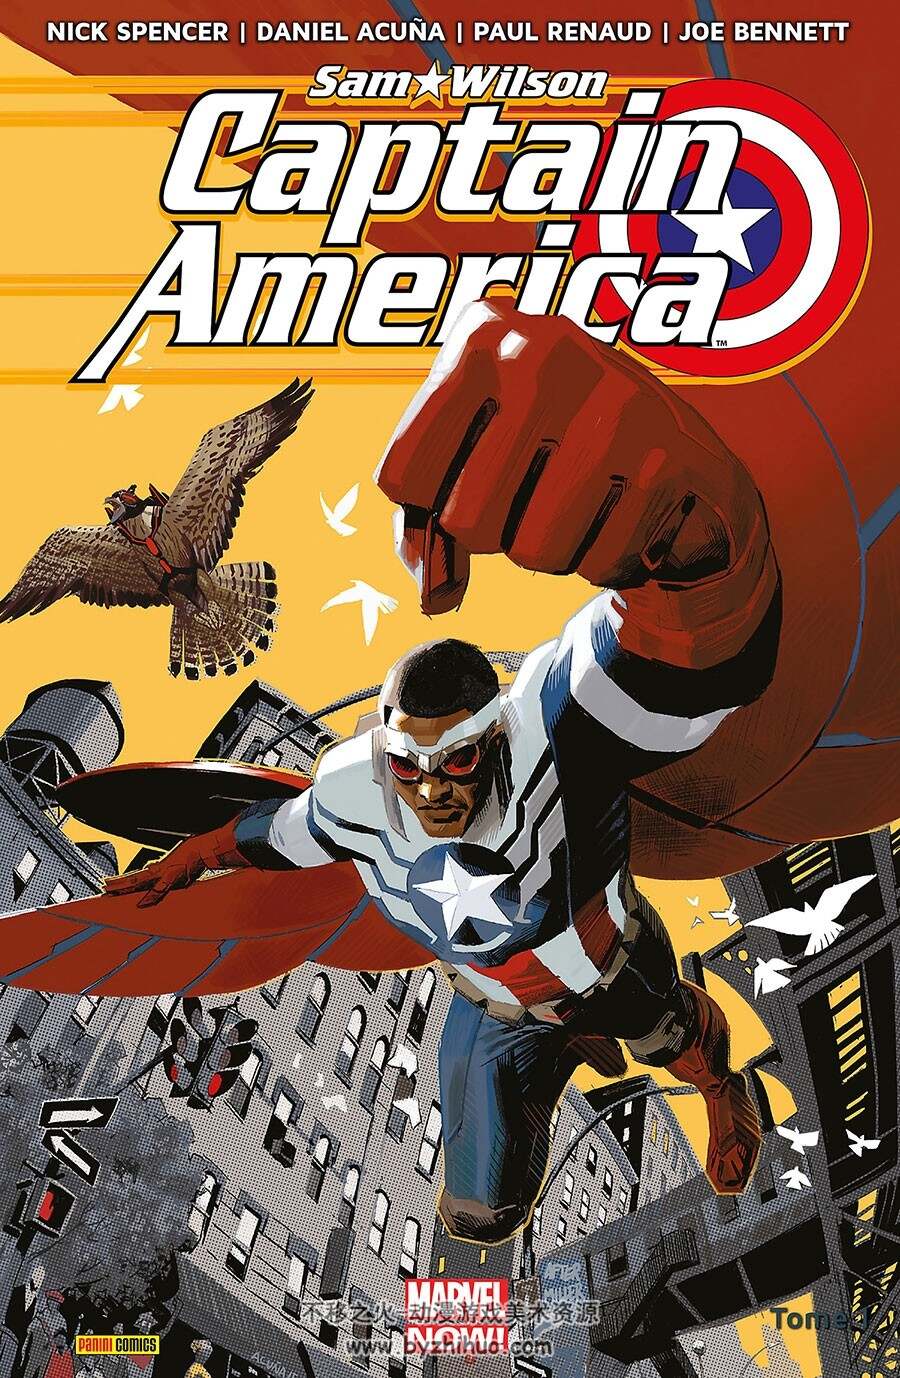 Captain America ：Sam Wilson 1-2册 Nick Spencer 漫威超级英雄漫画法语版